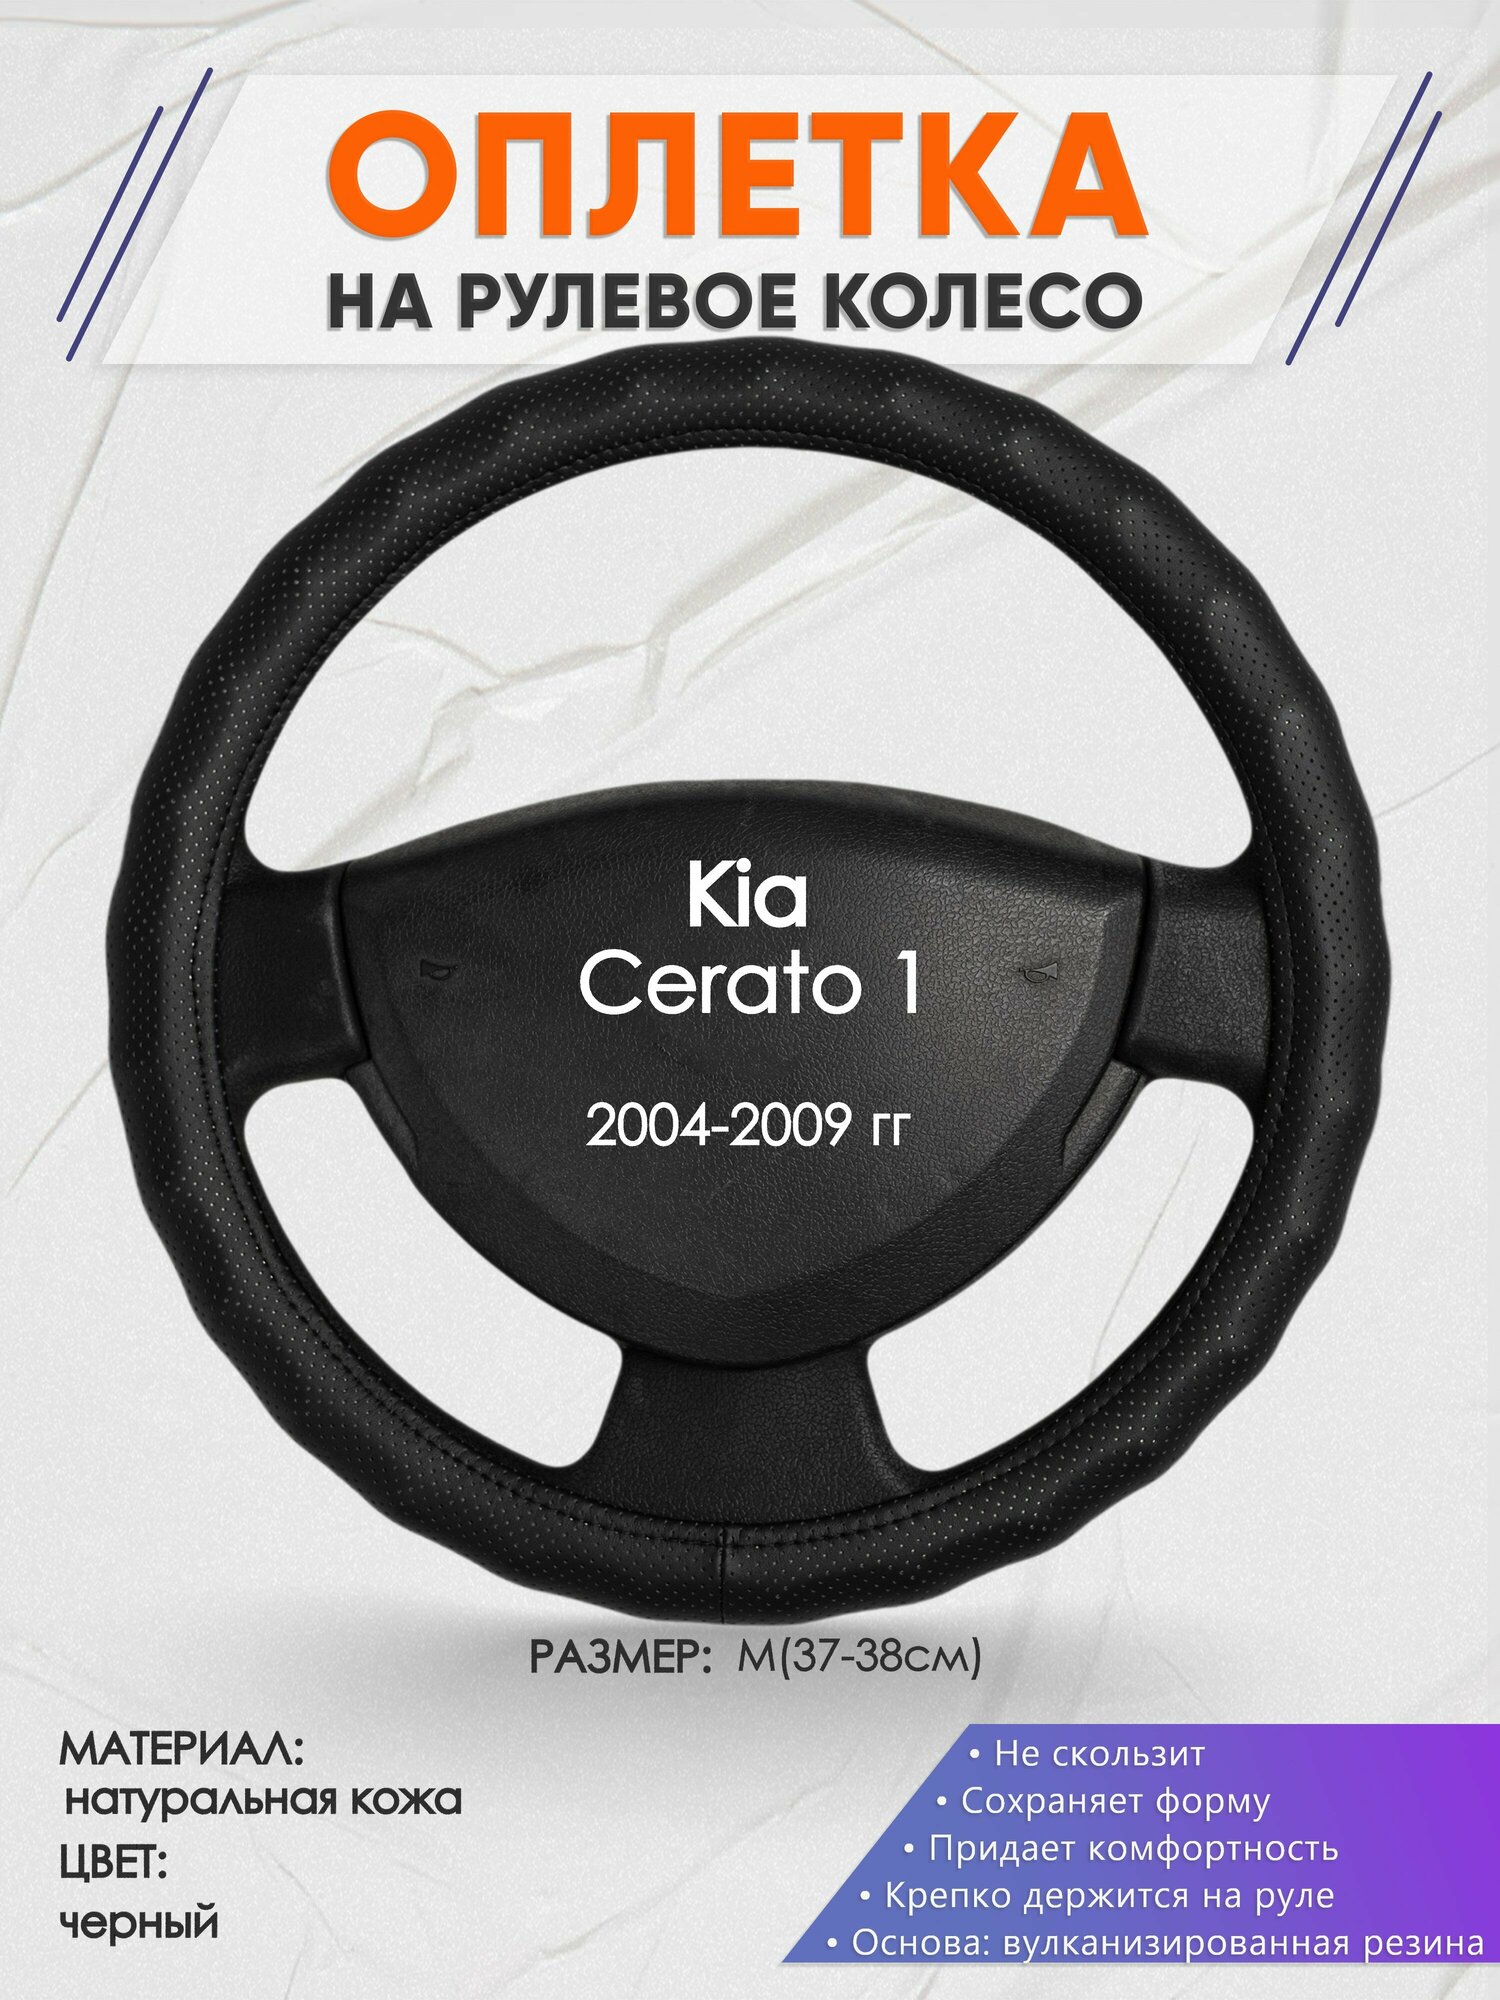 Оплетка на руль для Kia Cerato 1(Киа Церато 1 поколения) 2004-2009, M(37-38см), Натуральная кожа 30